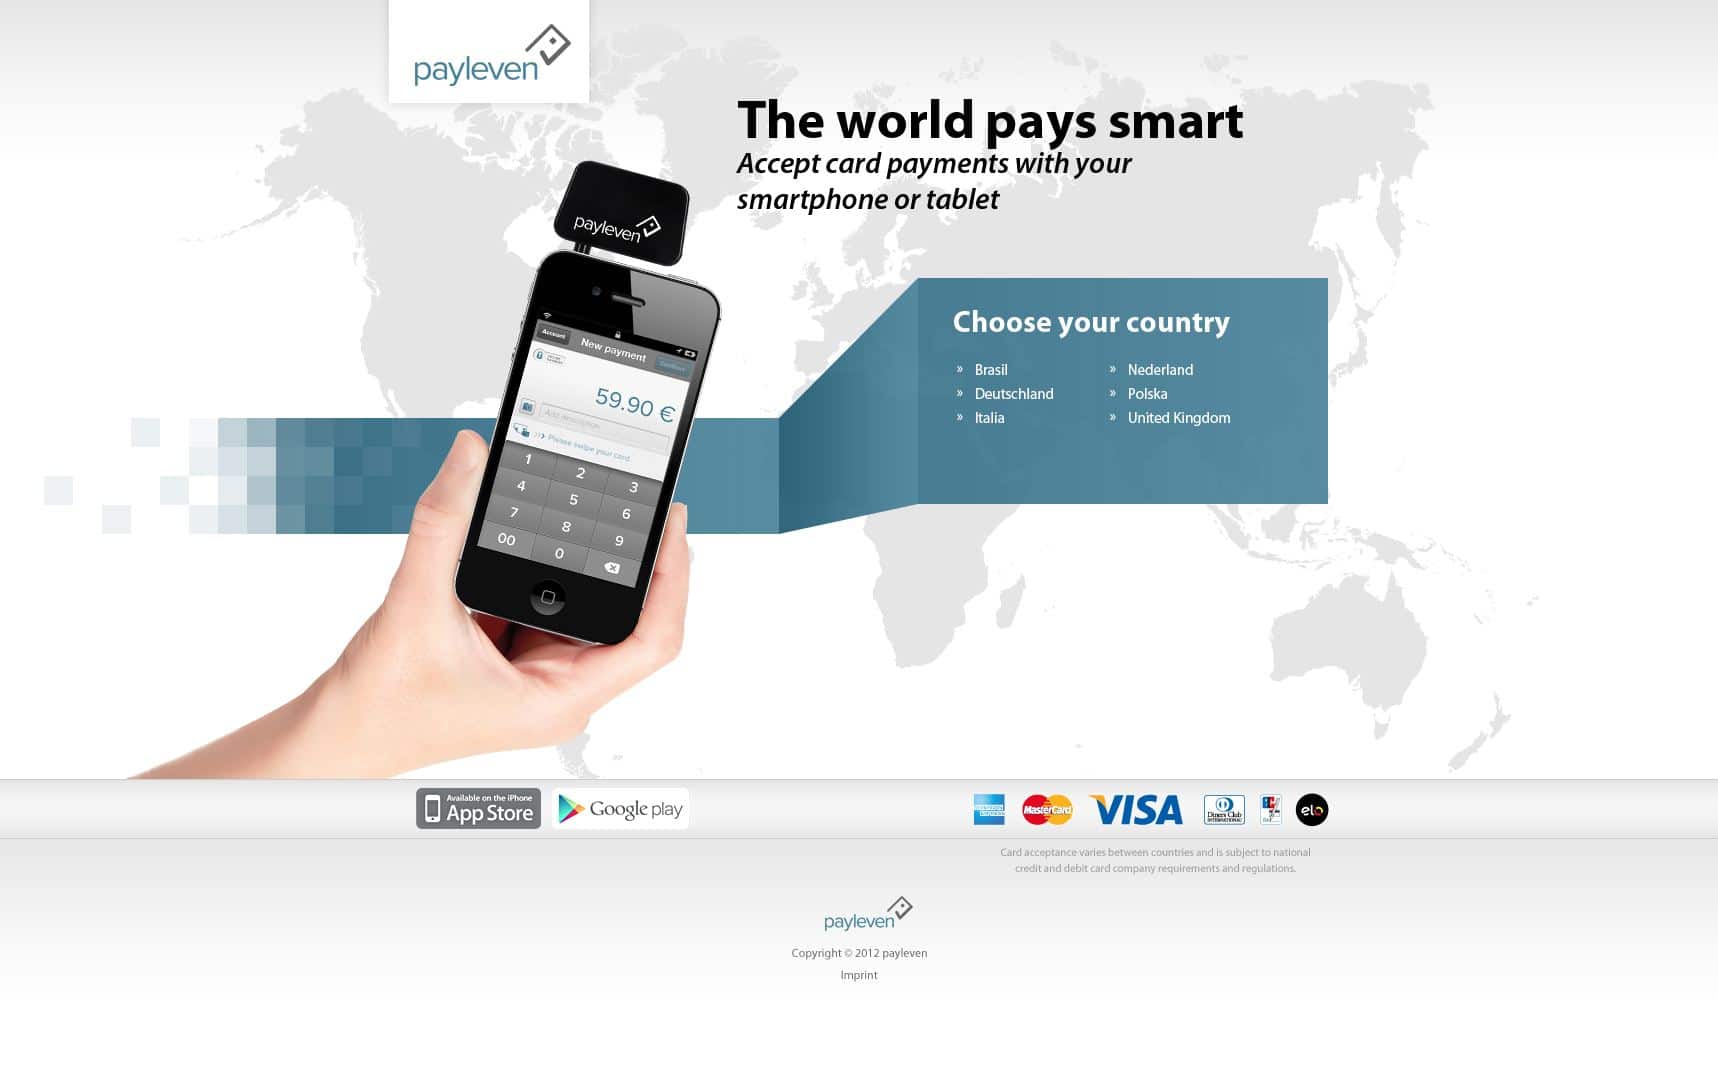 payleven.com pago con tarjeta desde el móvil tpv